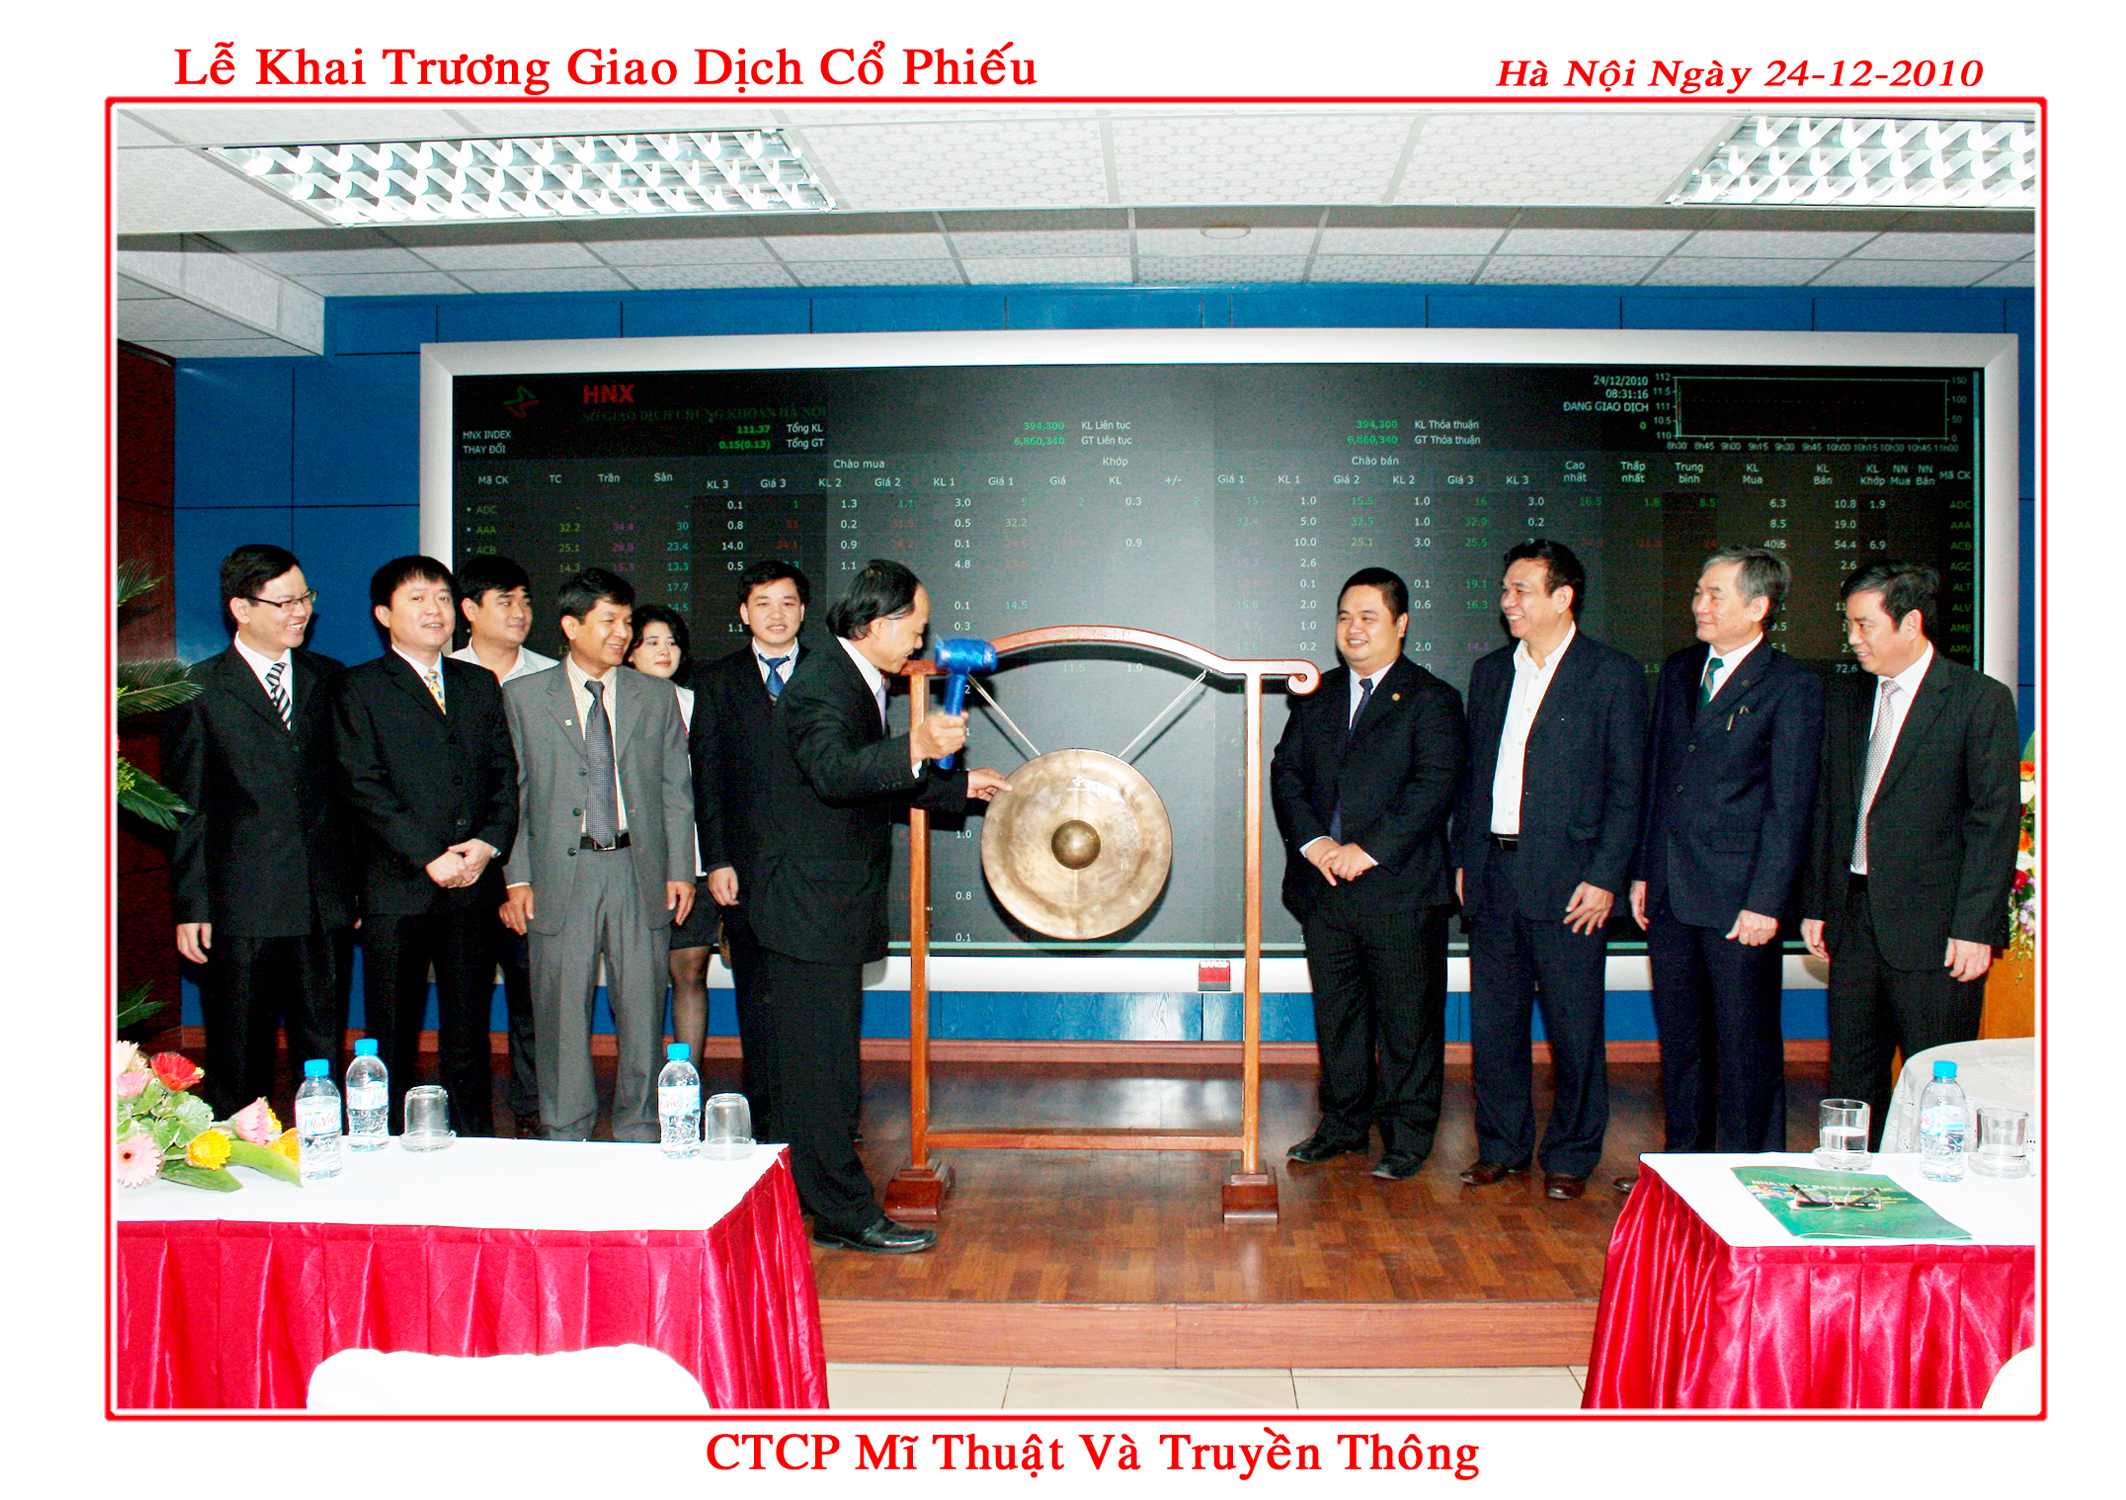 Công ty CP Mỹ thuật - Truyền thông niêm yết cổ phiếu tại Sở Giao dịch chứng khoán Hà Nội